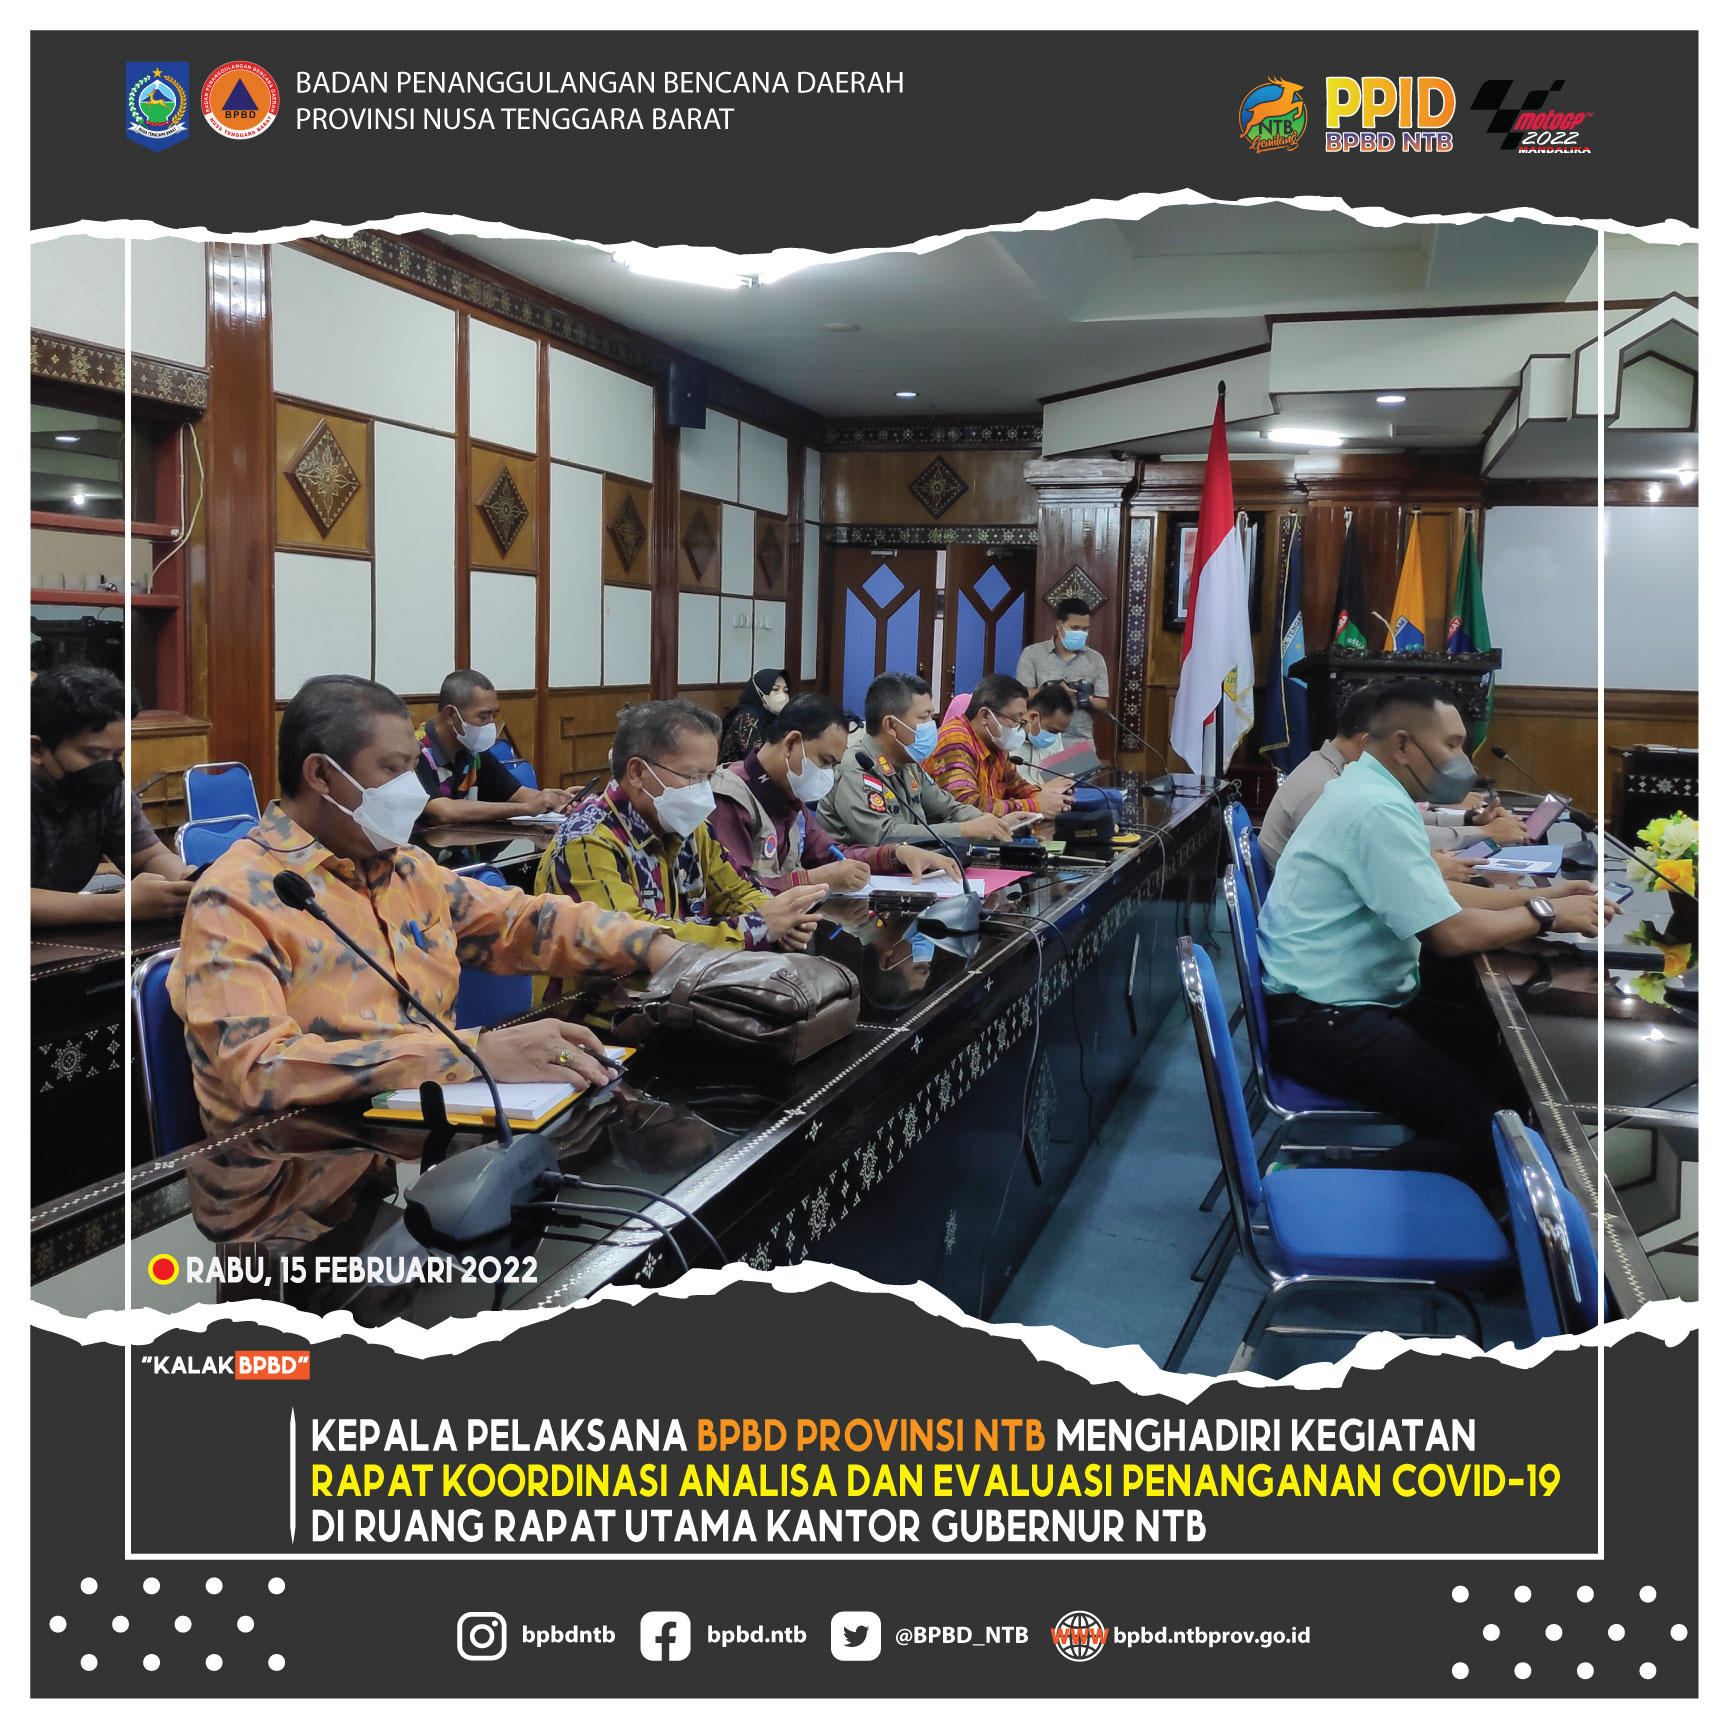 Kepala Pelaksana BPBD Provinsi NTB menghadiri kegiatan Rapat Koordinasi Analisa dan Evaluasi Penanganan COVID-19 di Ruang Rapat Utama Kantor Gubernur NTB (Rabu, 15 Februari 2022)